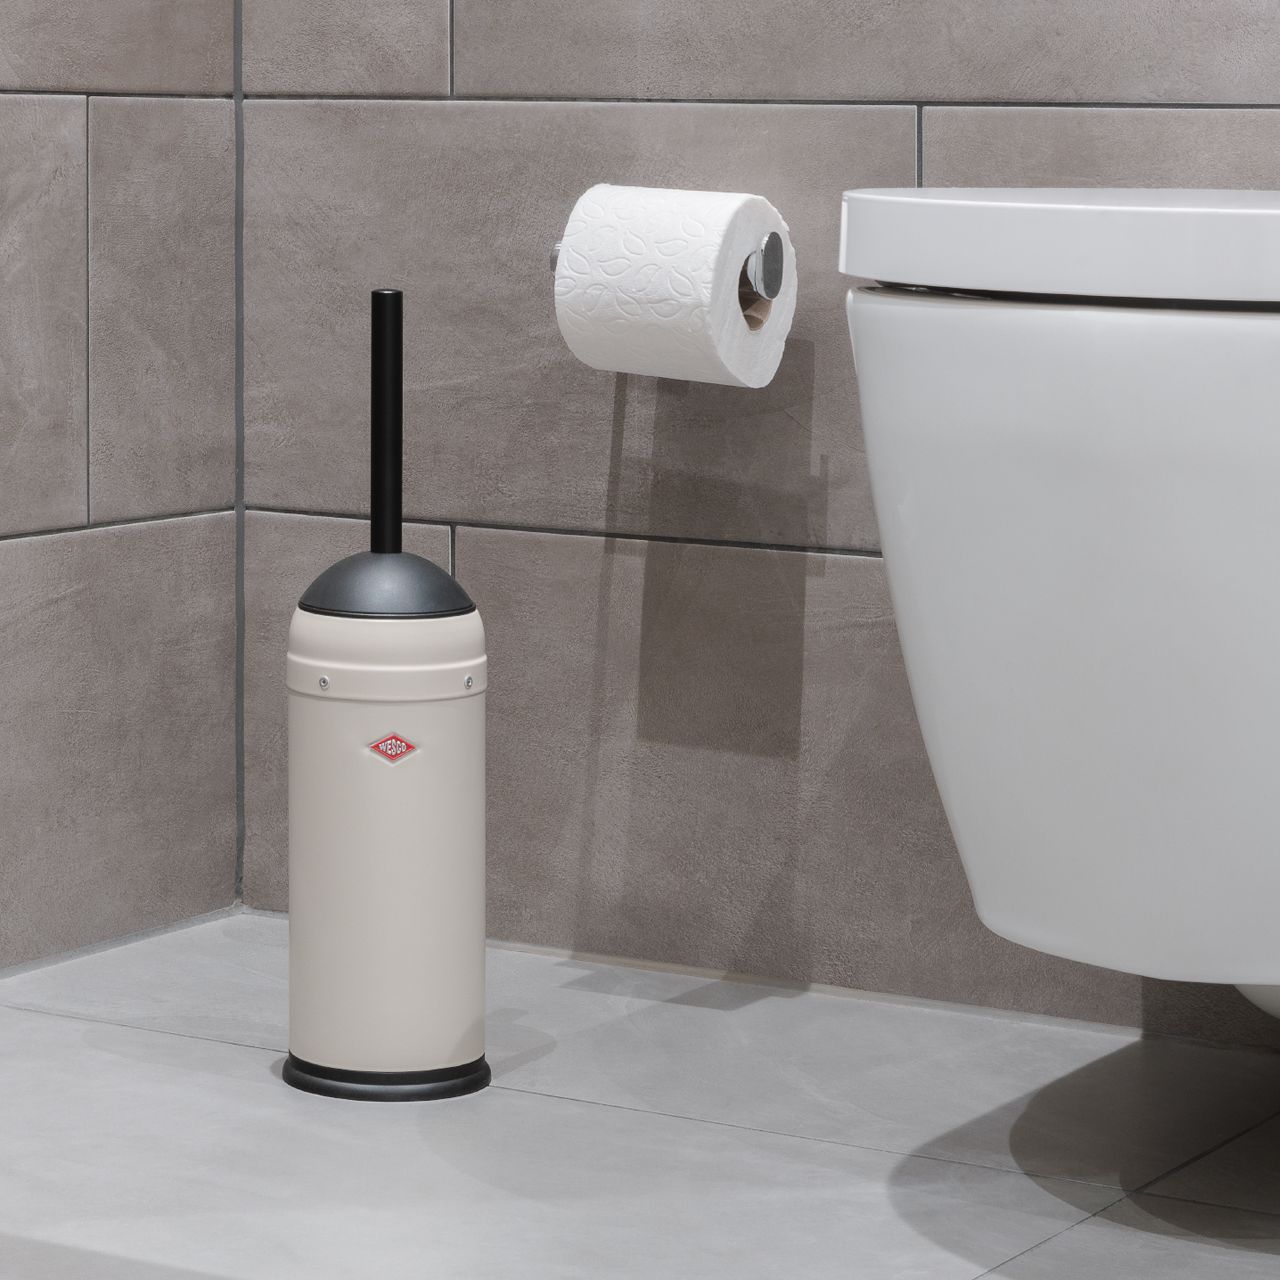 WESCO - Toilet brush -  Stainless steel